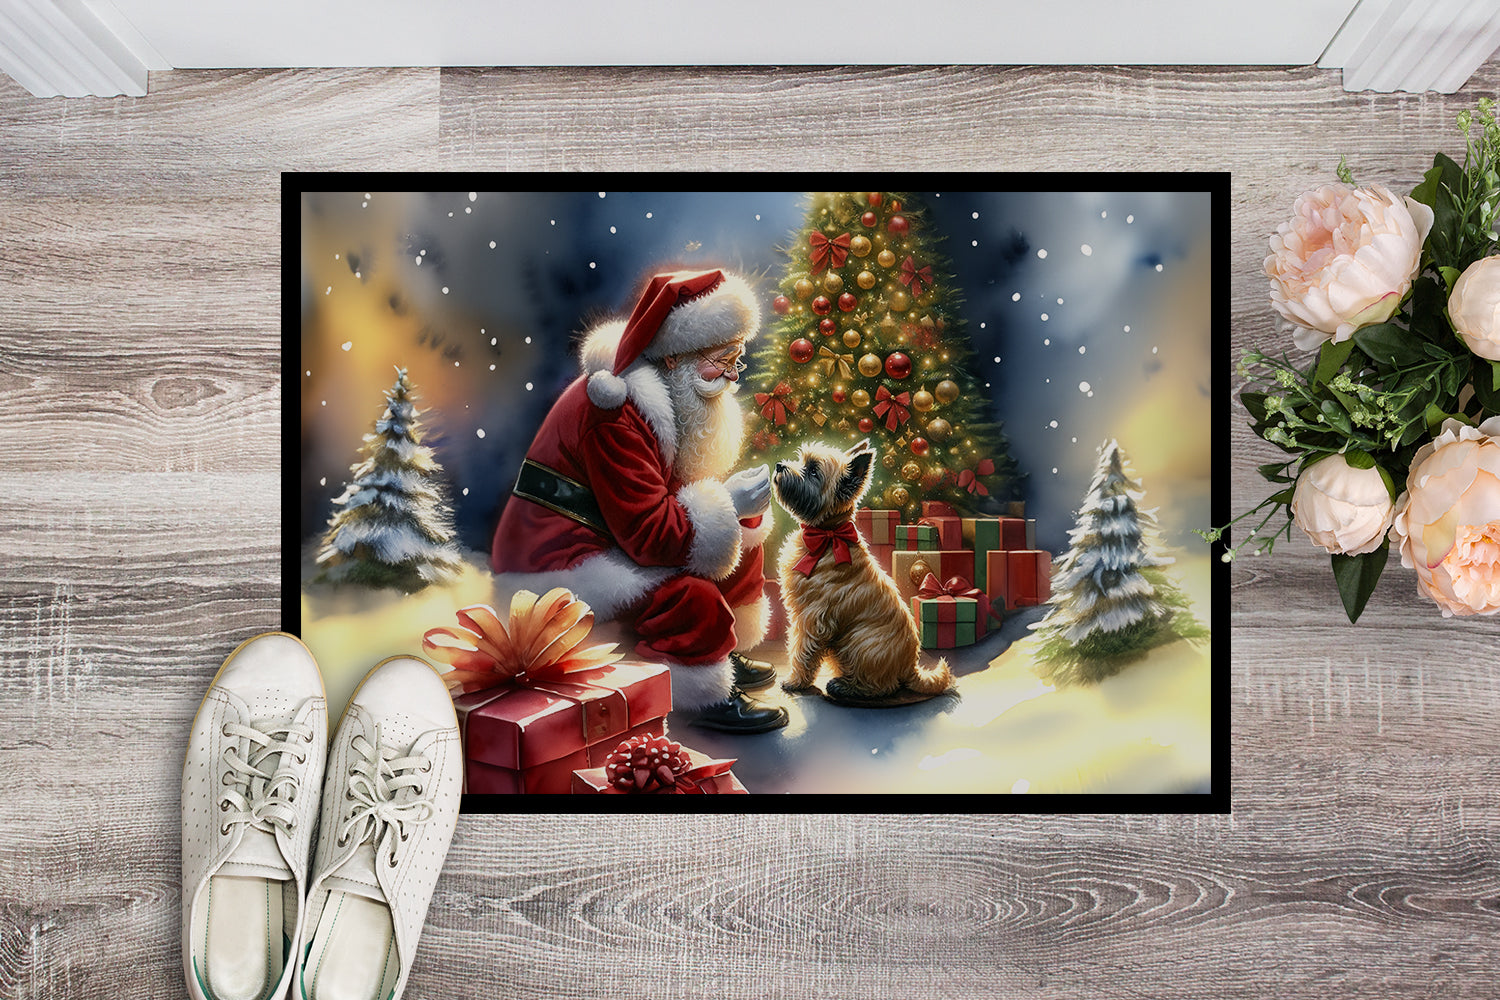 Cairn Terrier and Santa Claus Doormat